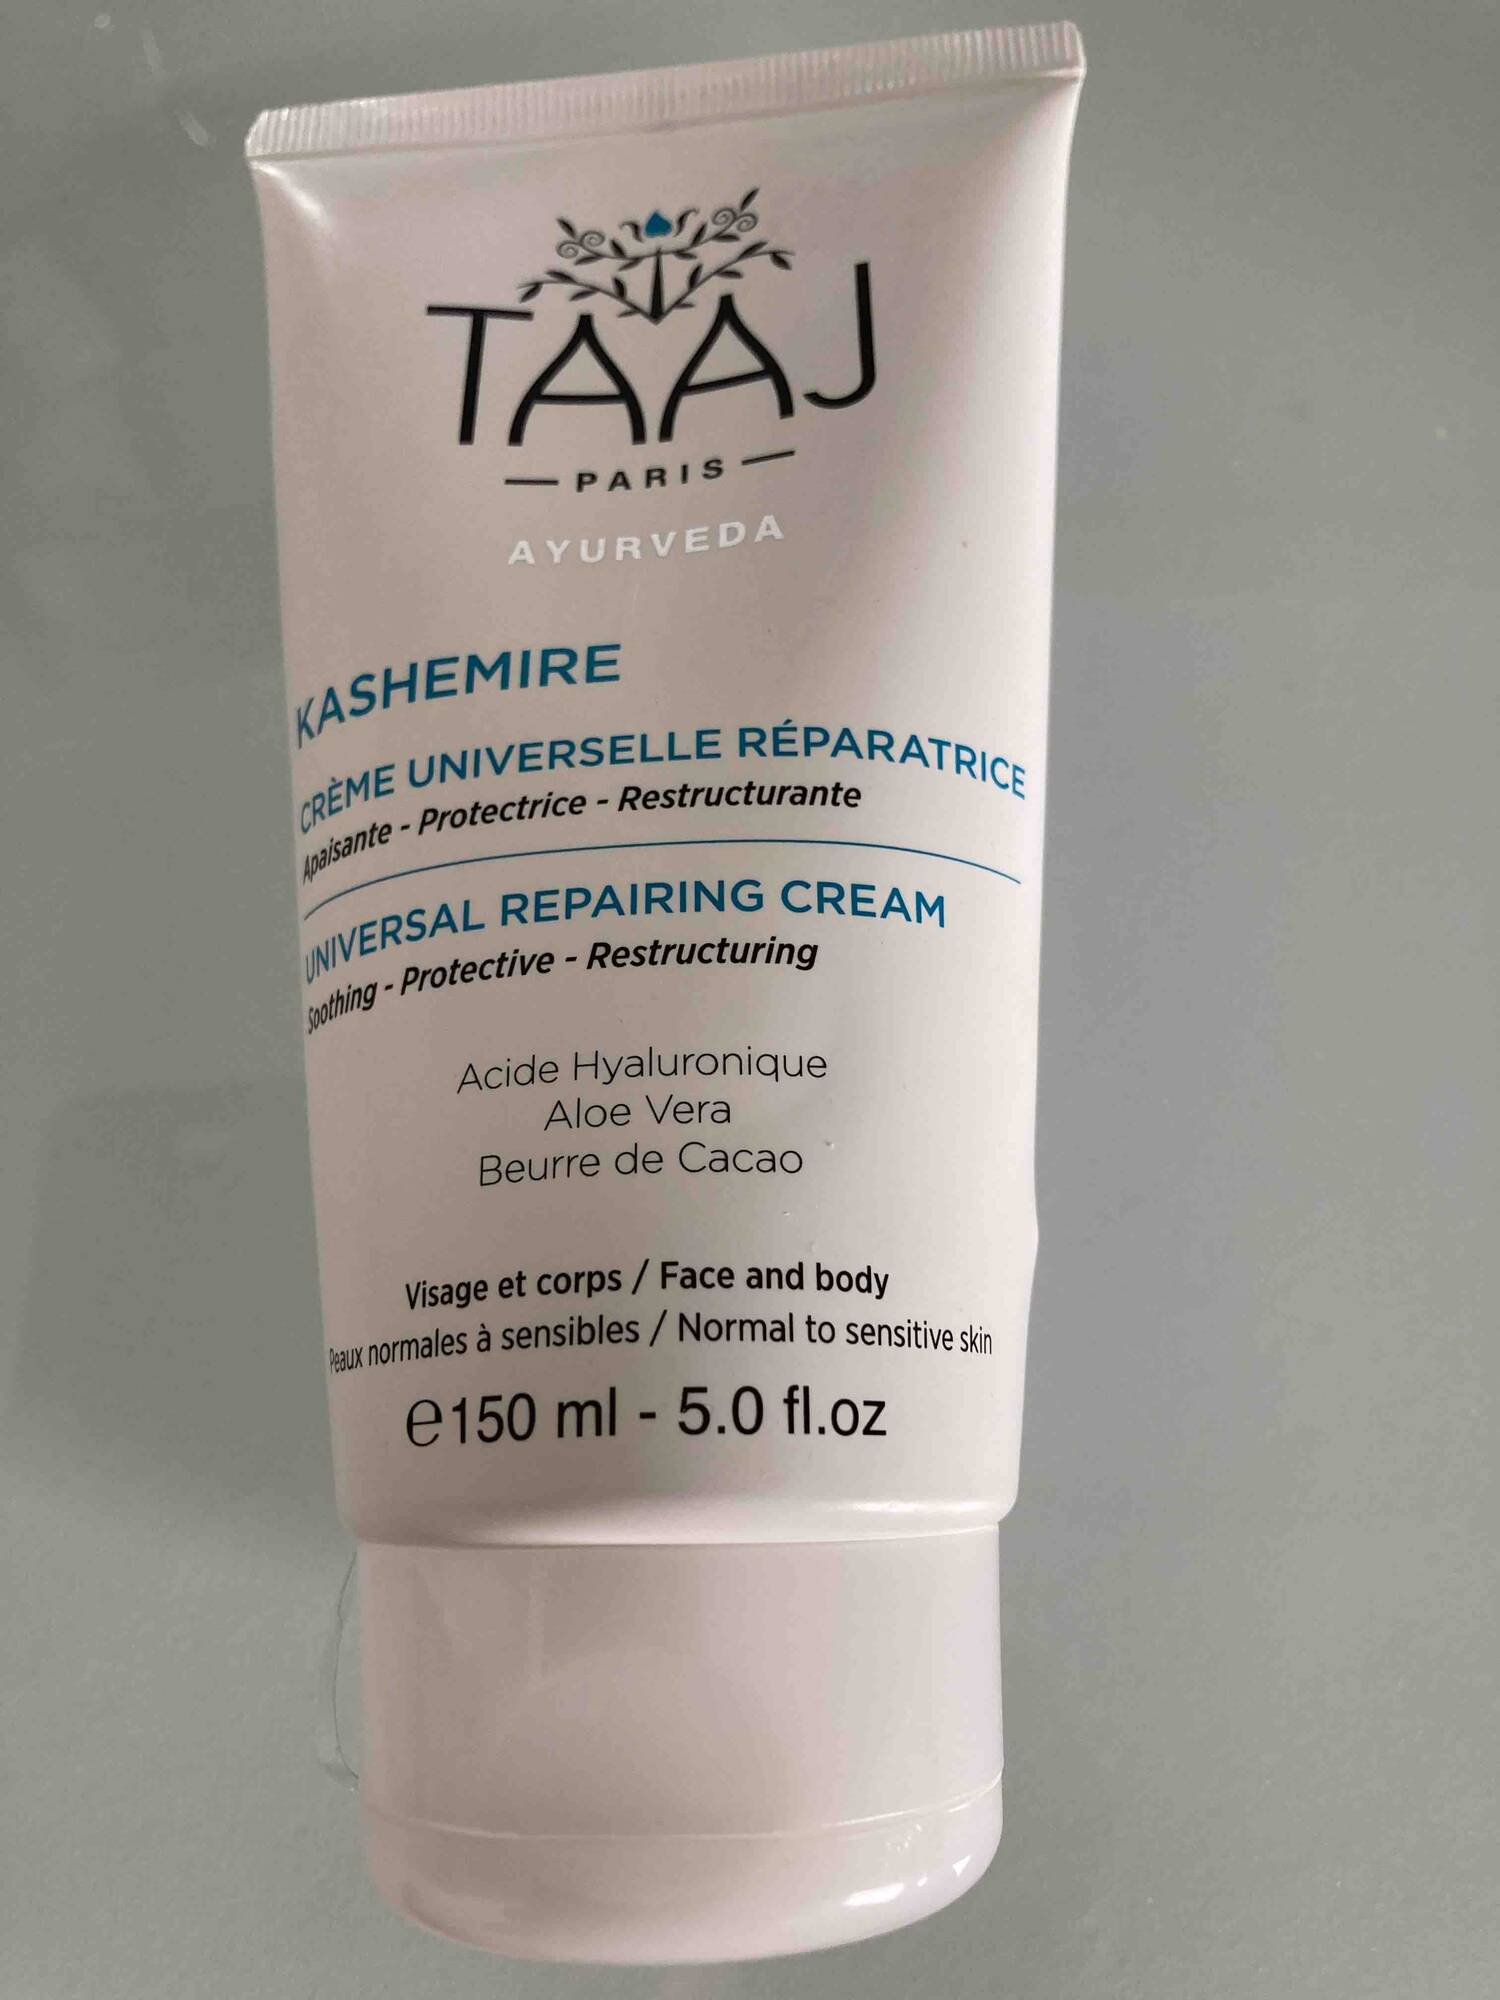 TAAJ - Kashemire - Crème universelle réparatrice